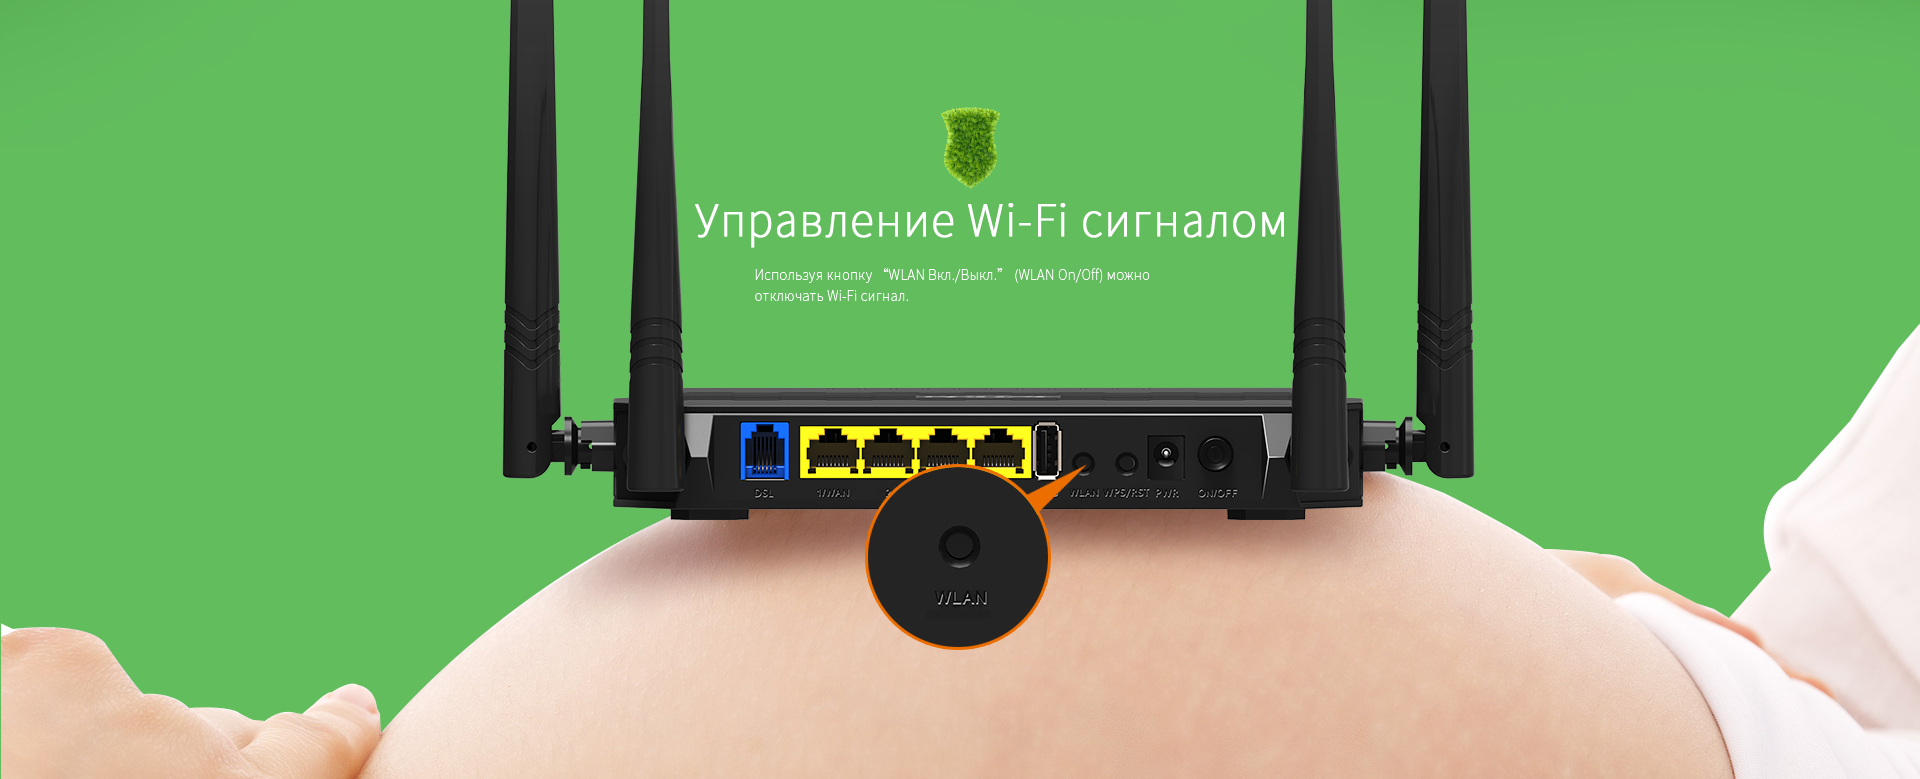 adsl модем с wi-fi роутером в Ташкента, Намангане, Узбекистане